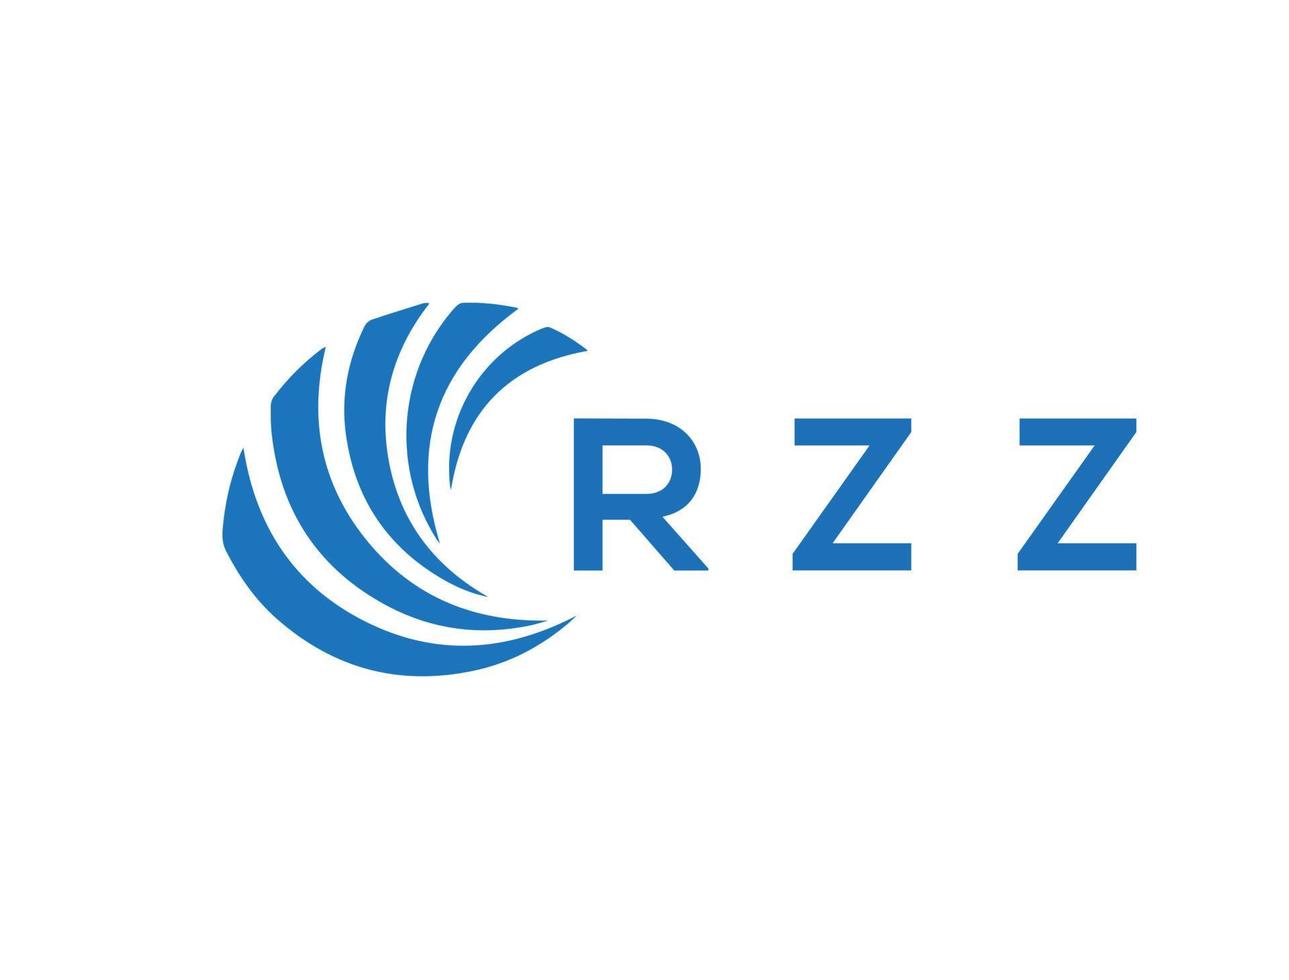 RZZ letter logo design on white background. RZZ creative circle letter logo concept. RZZ letter design. vector